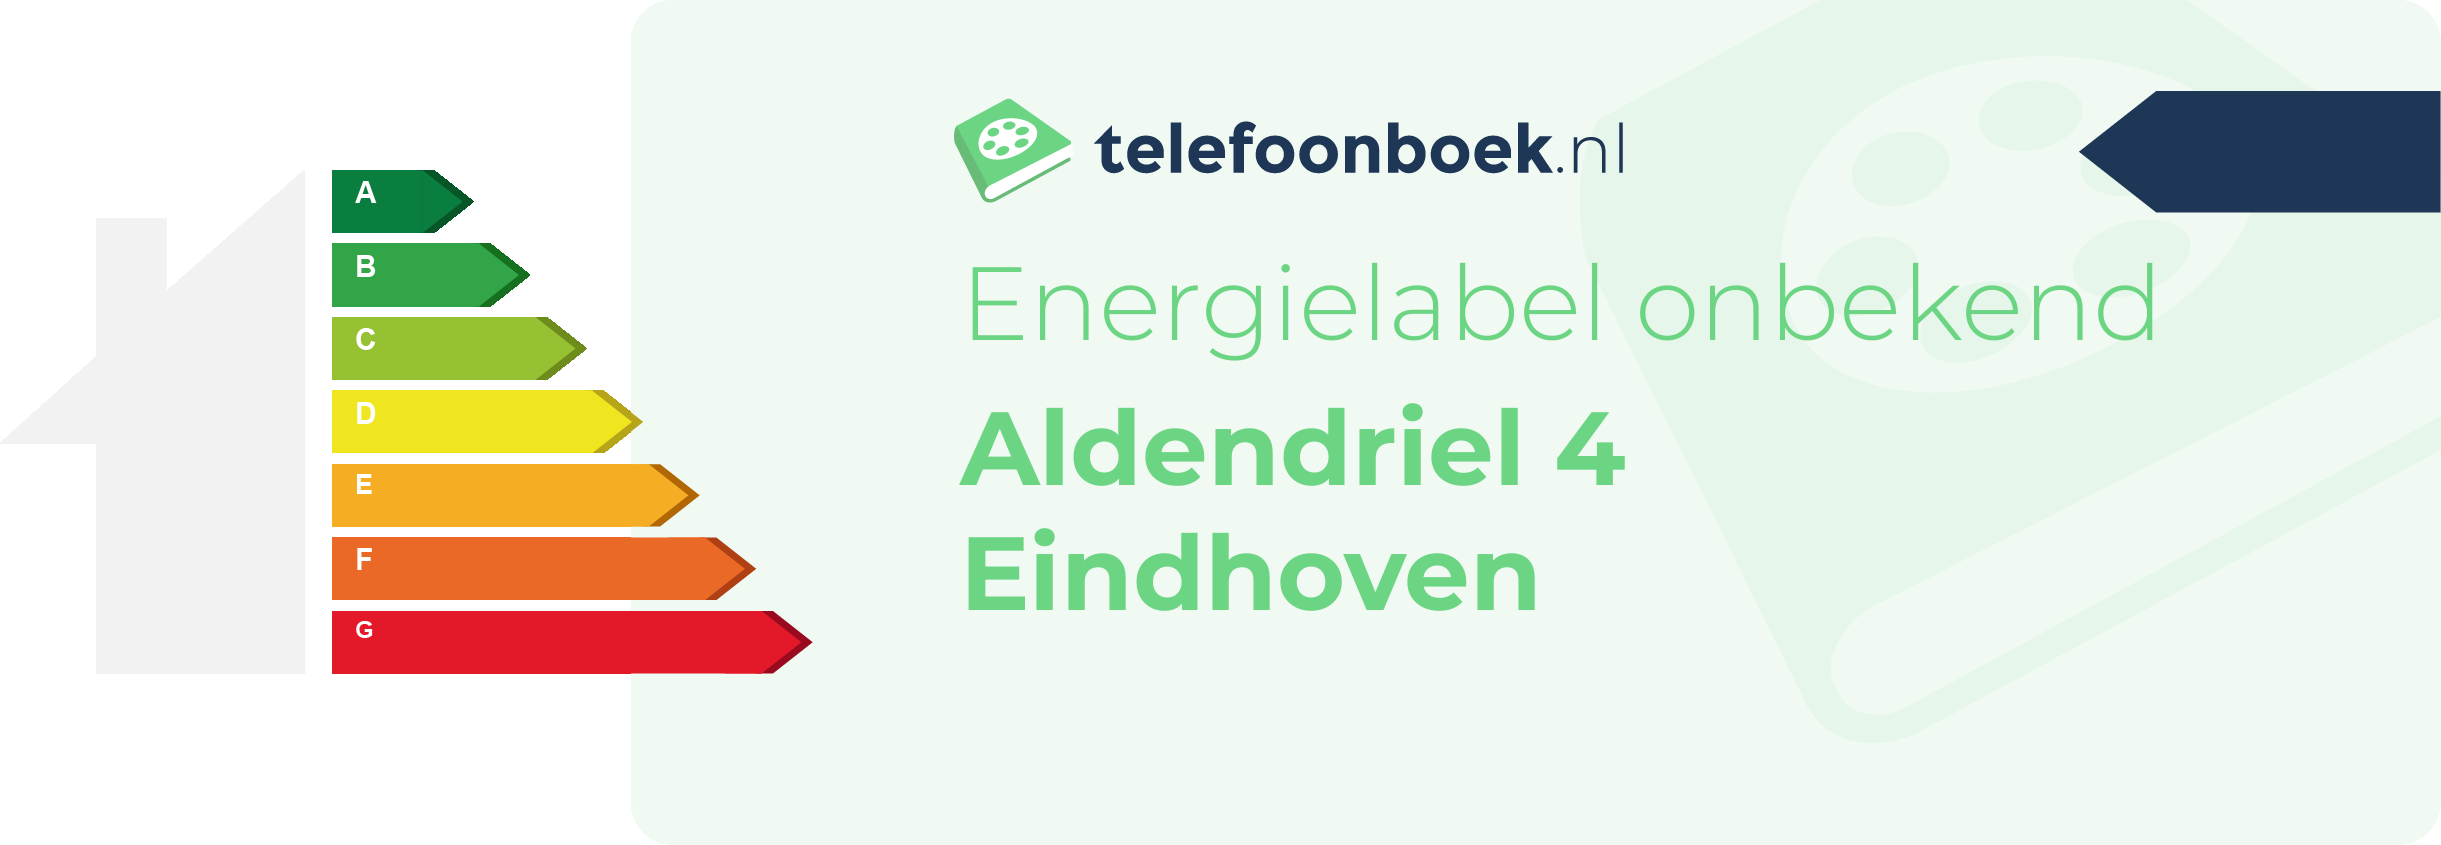 Energielabel Aldendriel 4 Eindhoven